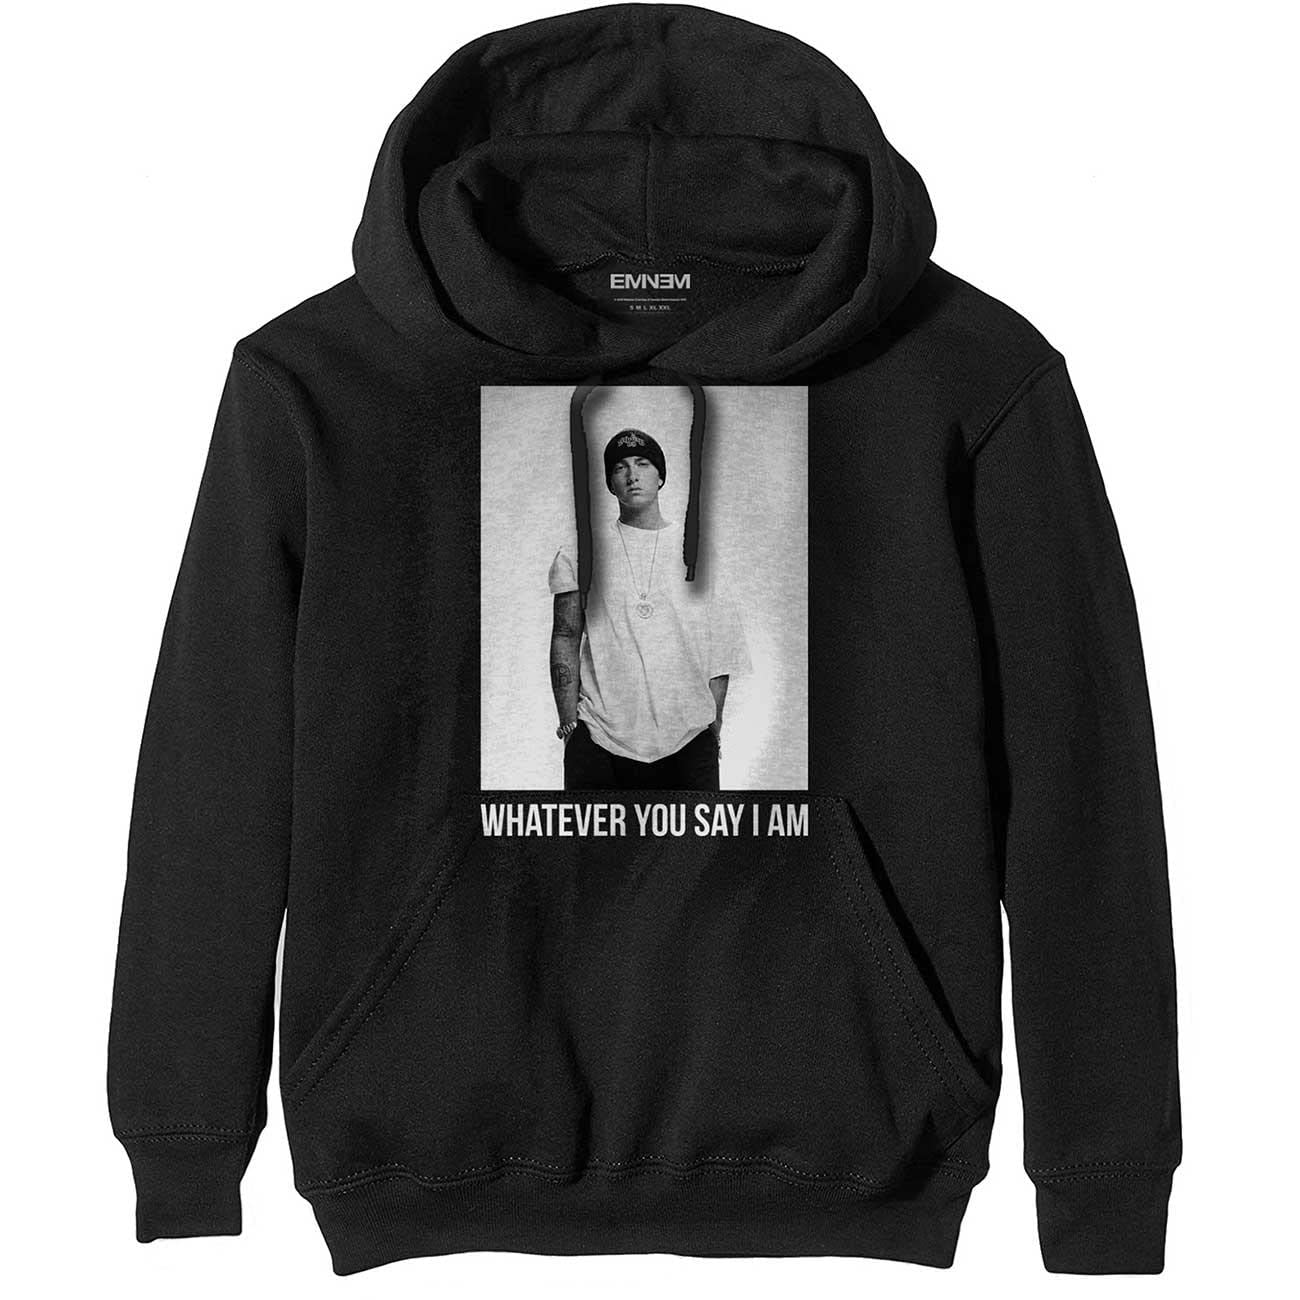 Eminem - Whatever Sweatshirt für Erwachsene, Unisex, Schwarz , XL